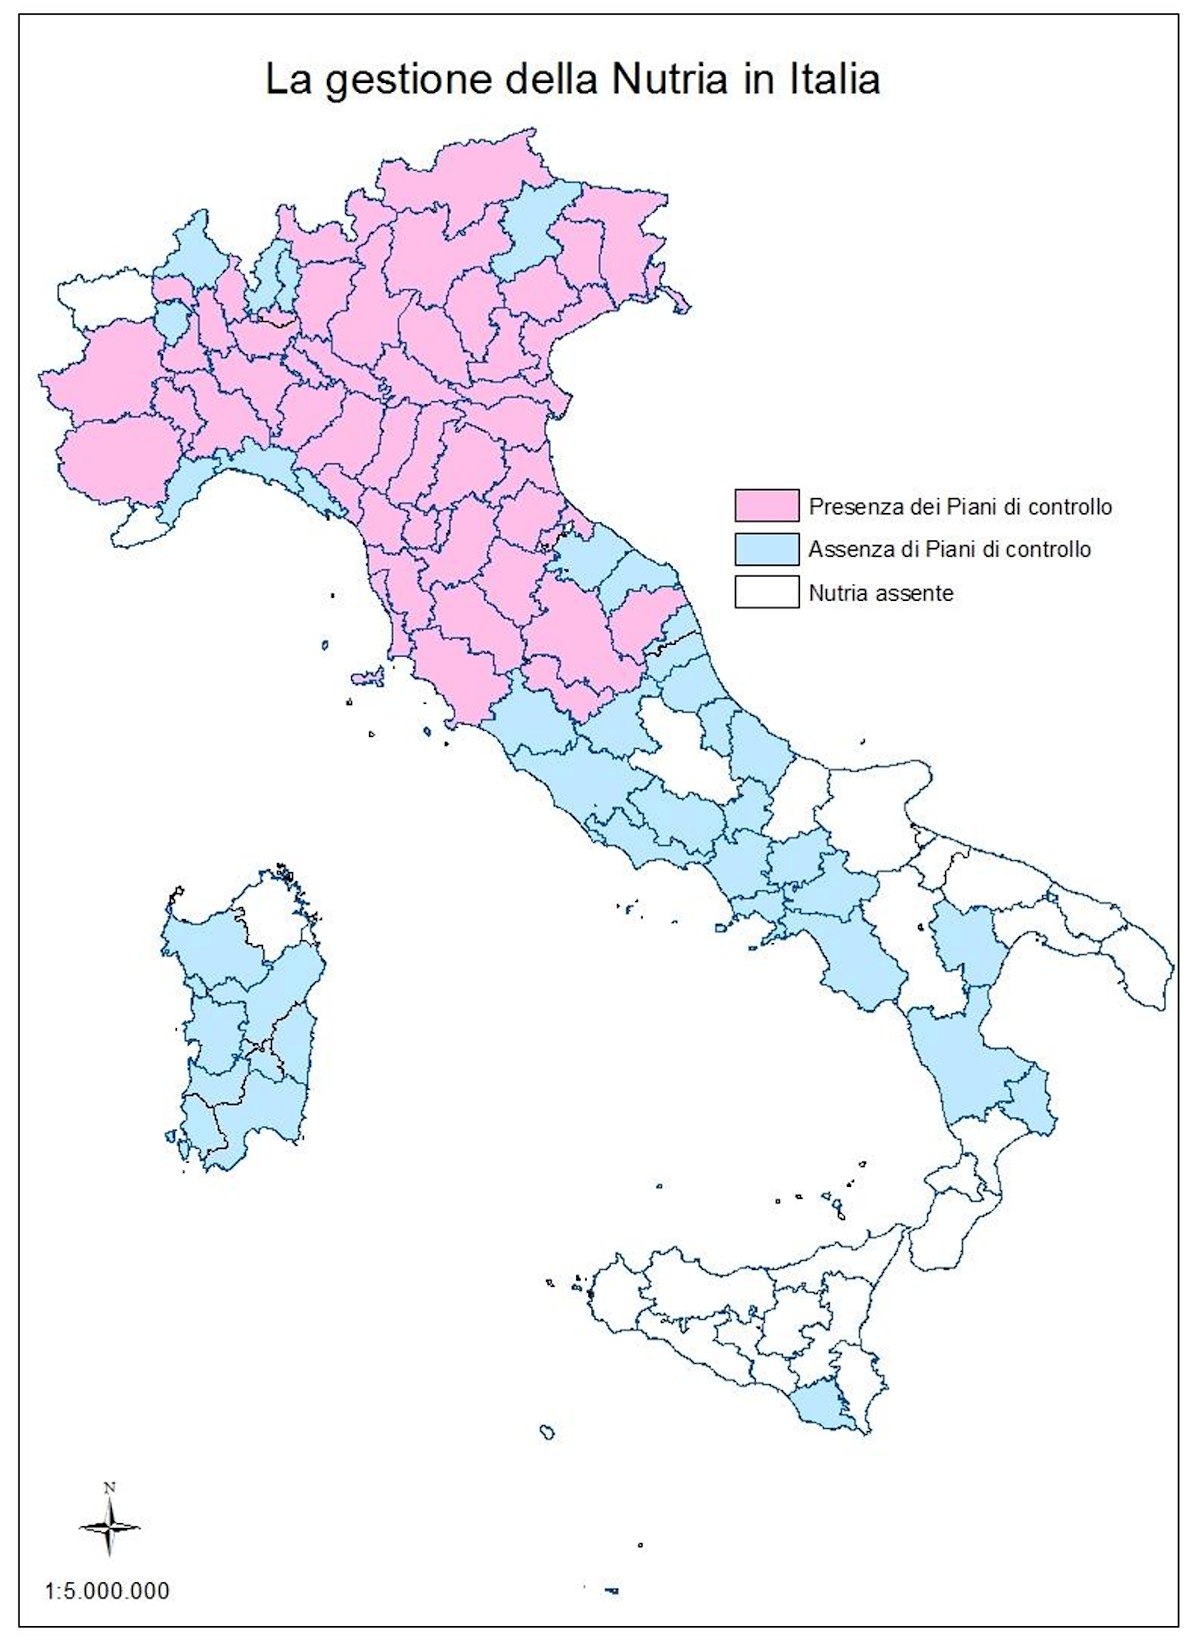 La gestione della nutria in Italia